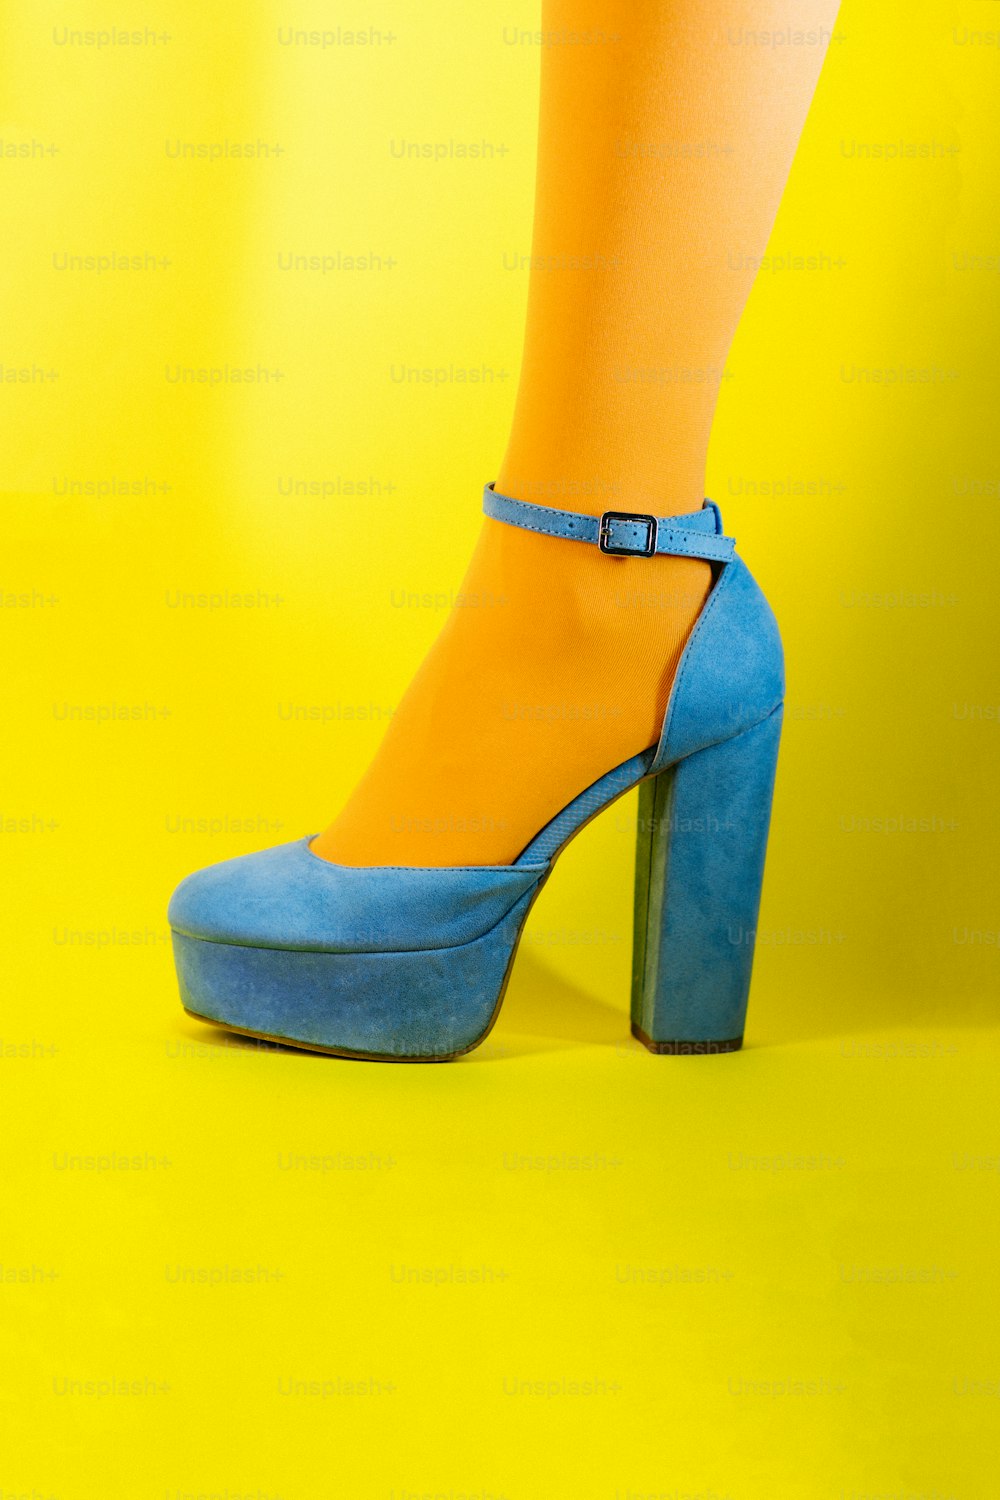 青と黄色のハイヒールを履いた女性の足